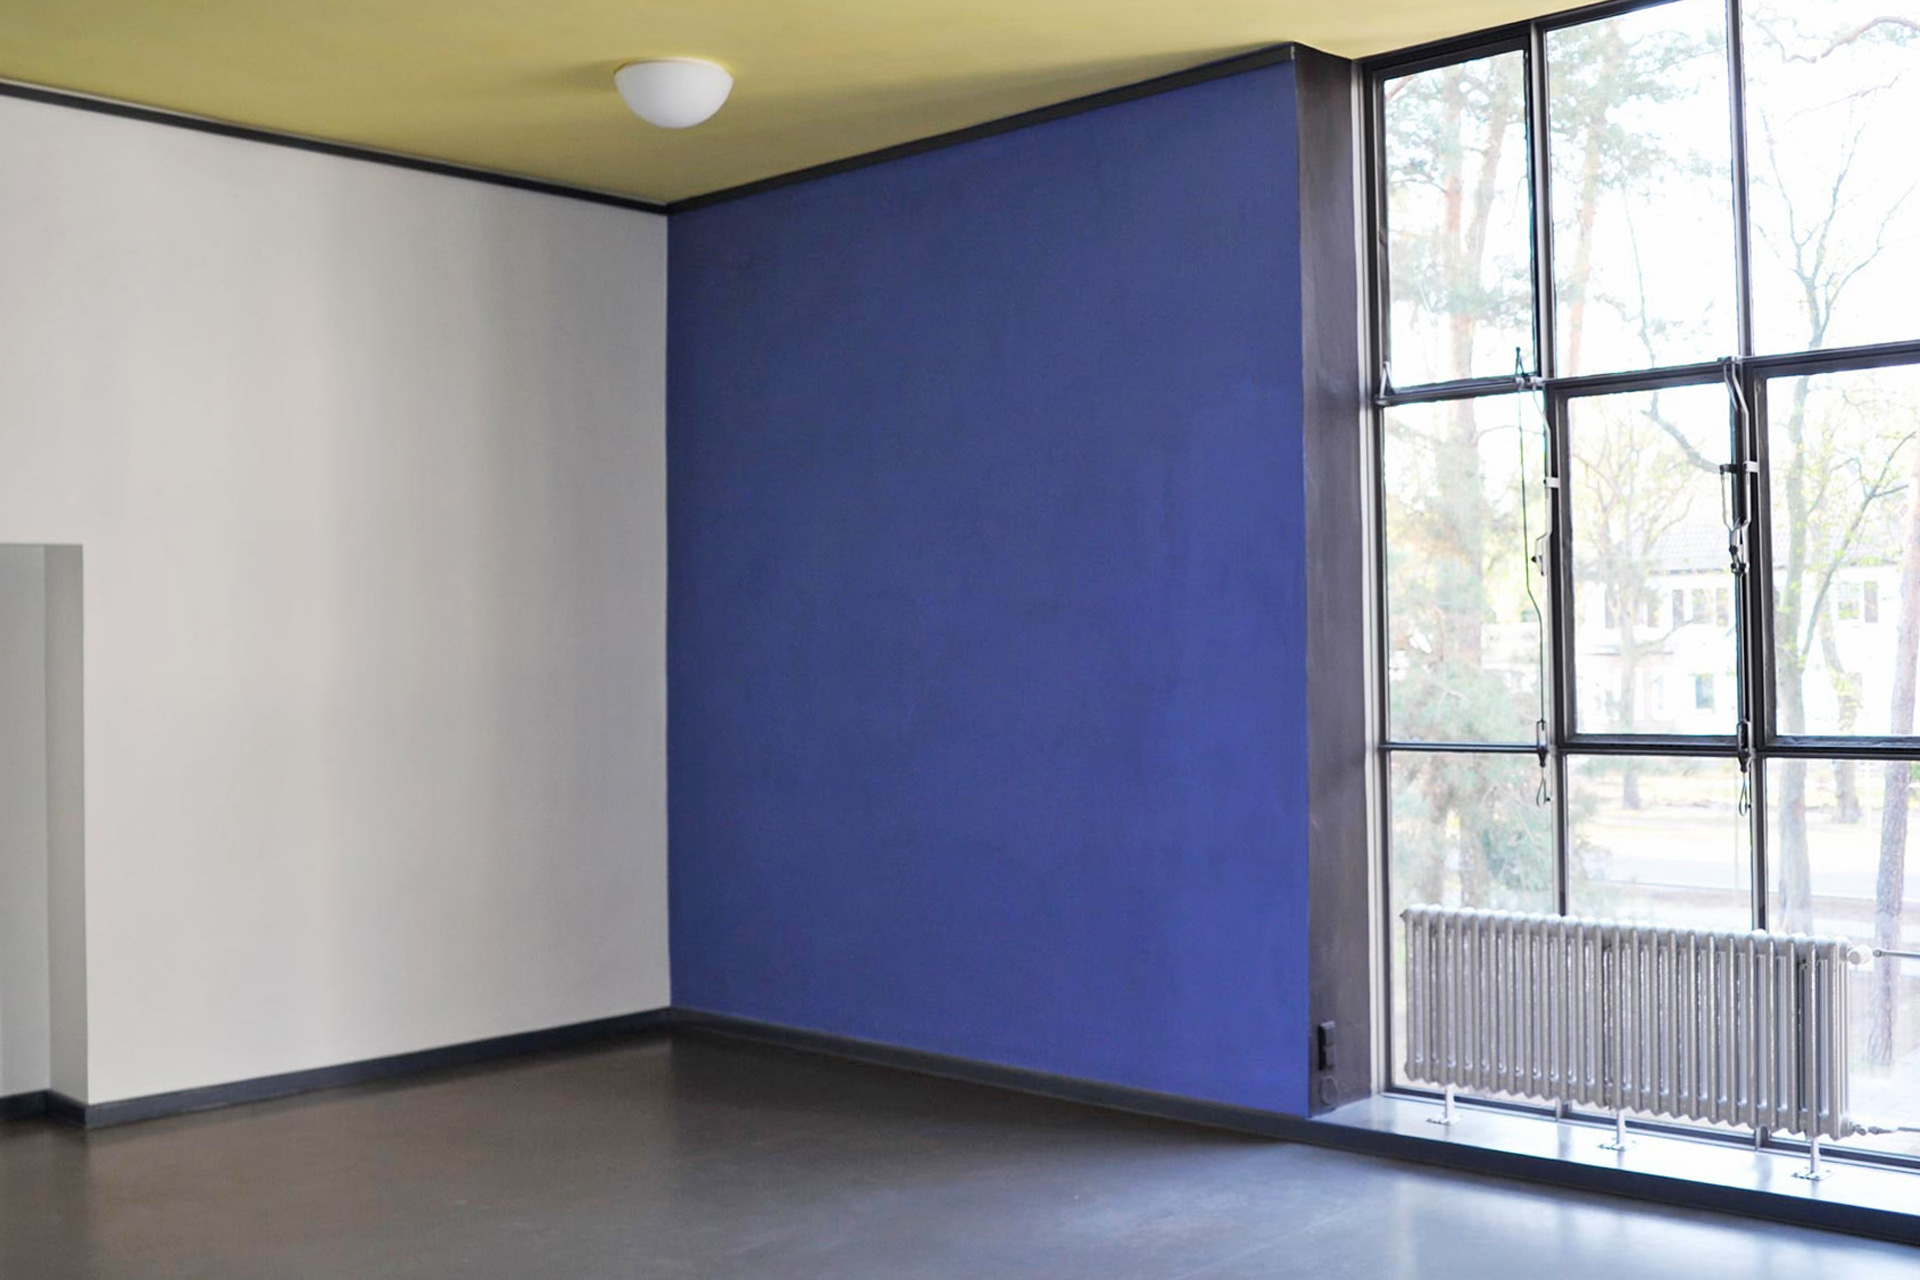 Restaurierung, Fachplanung, Bestandsanalyse, Farbkonzept - Dessau, Meisterhaus Kandinsky Klee, Atelier Kandinsky